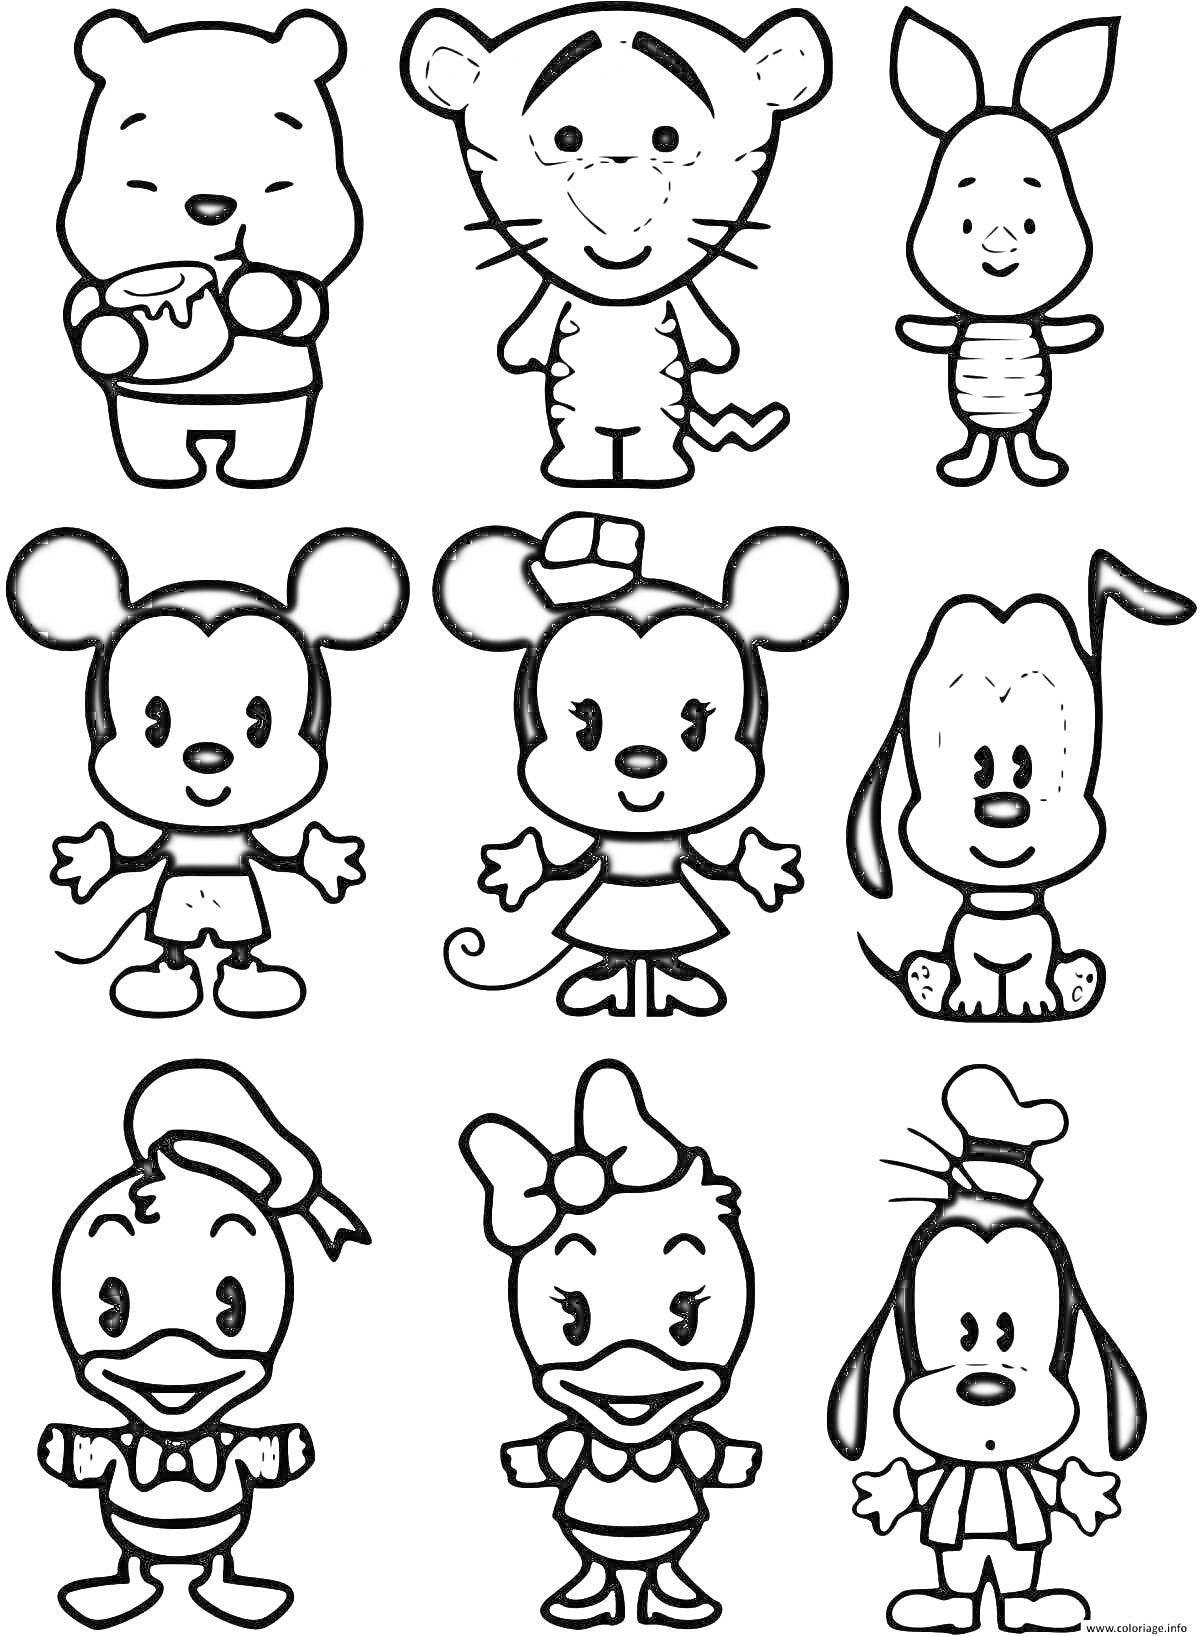 Раскраска Мини персонажи для наклеек - Мишка с вазой меда, Тигр, Кролик, Мышонок мальчик, Мышонок девочка, Собака, Утенок мальчик, Утенок девочка, Собака с длинными ушами